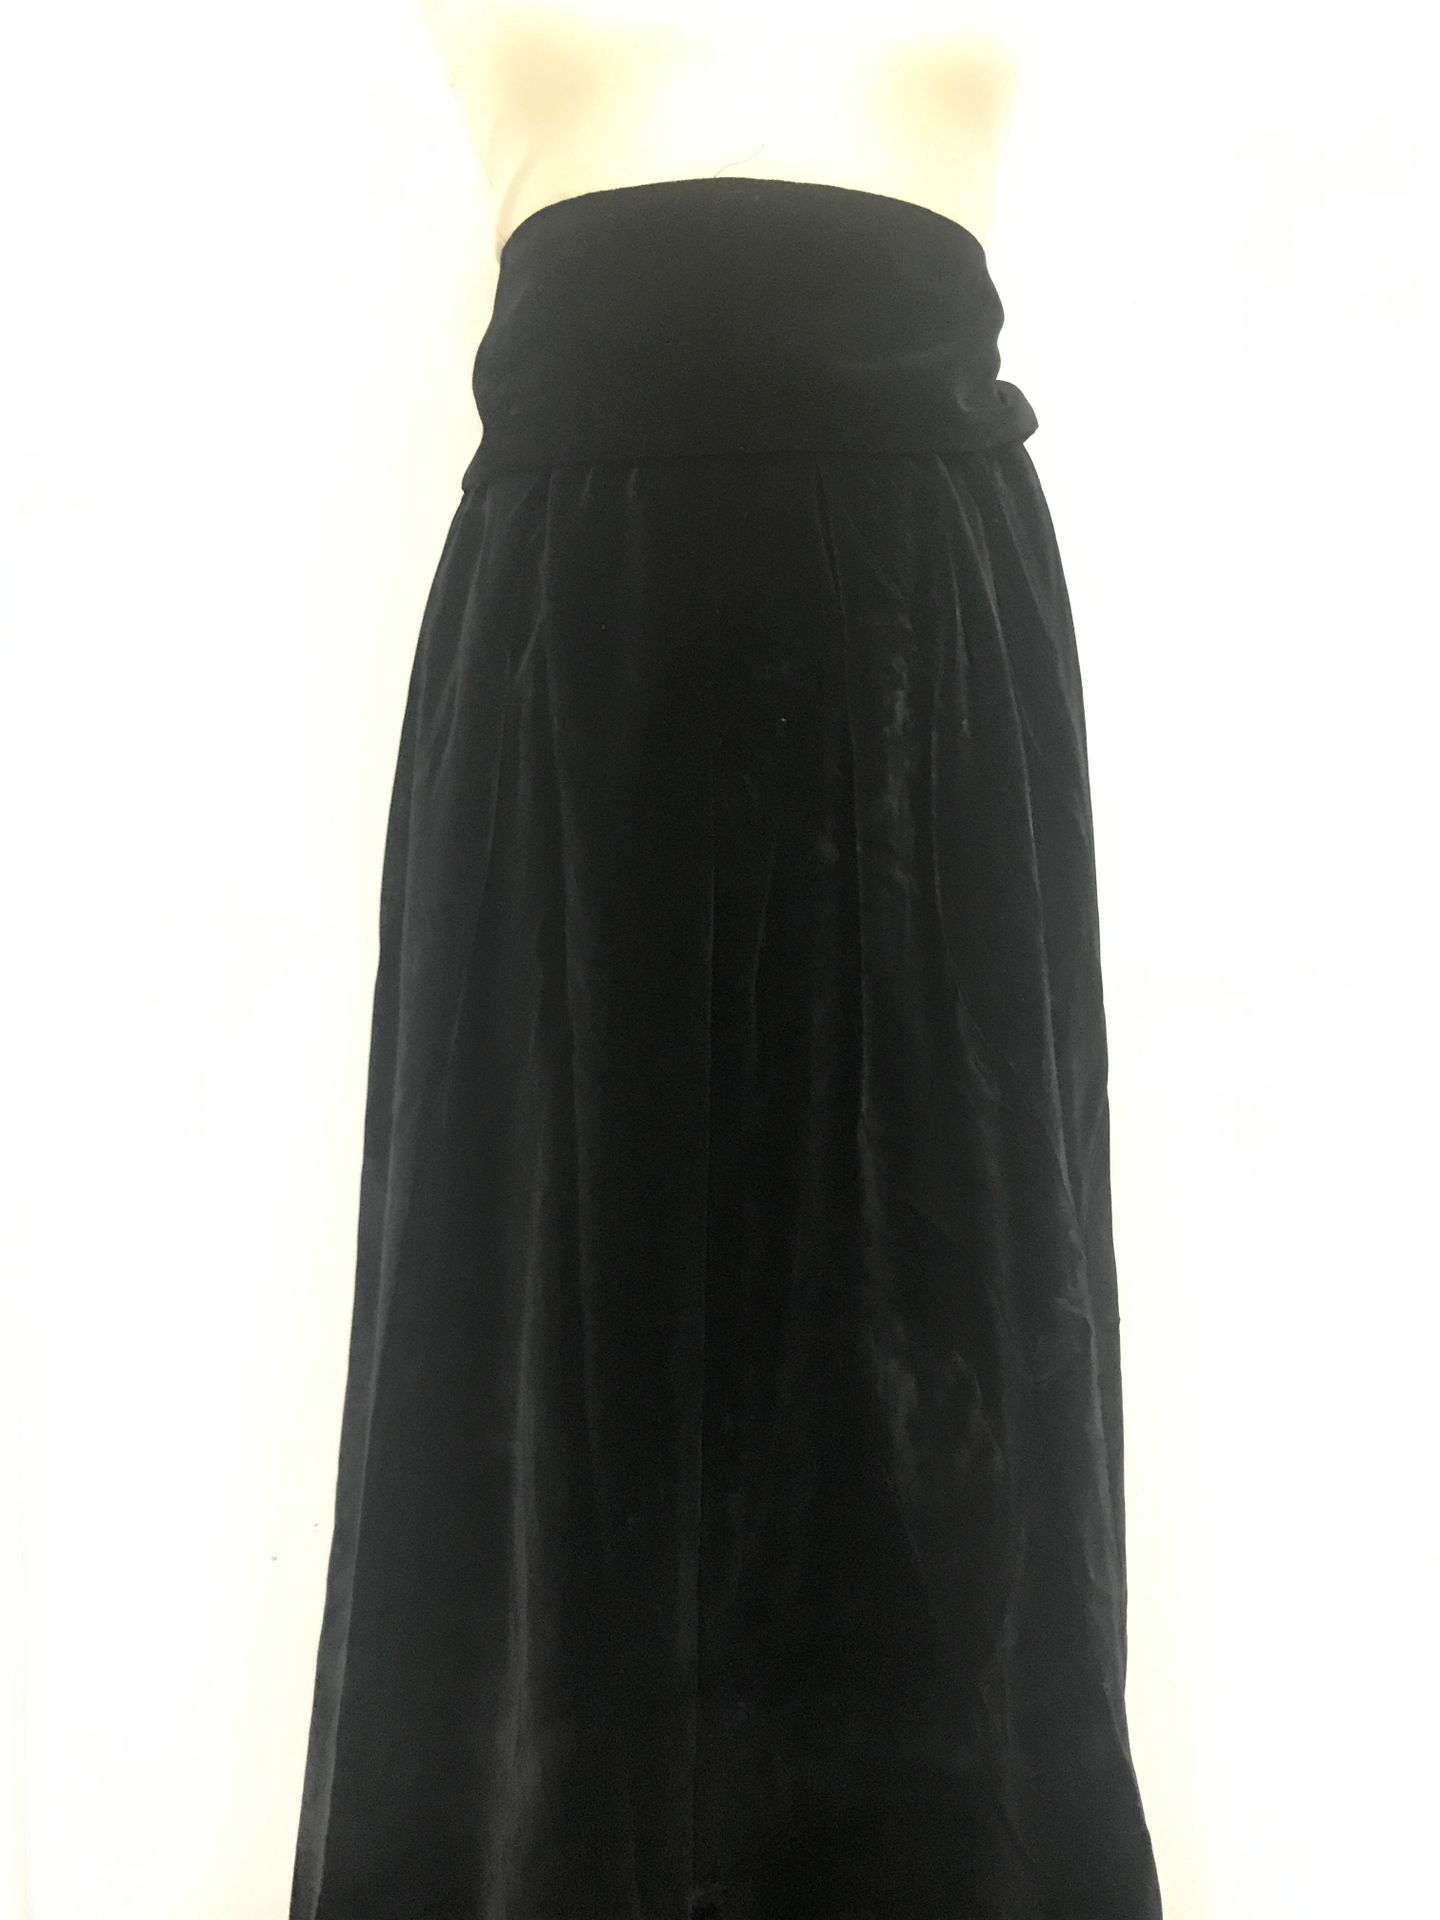 Null 黑色丝绒高腰长裙，内衬至下摆，饰以可拆卸腰带。尺寸38。约1980年。